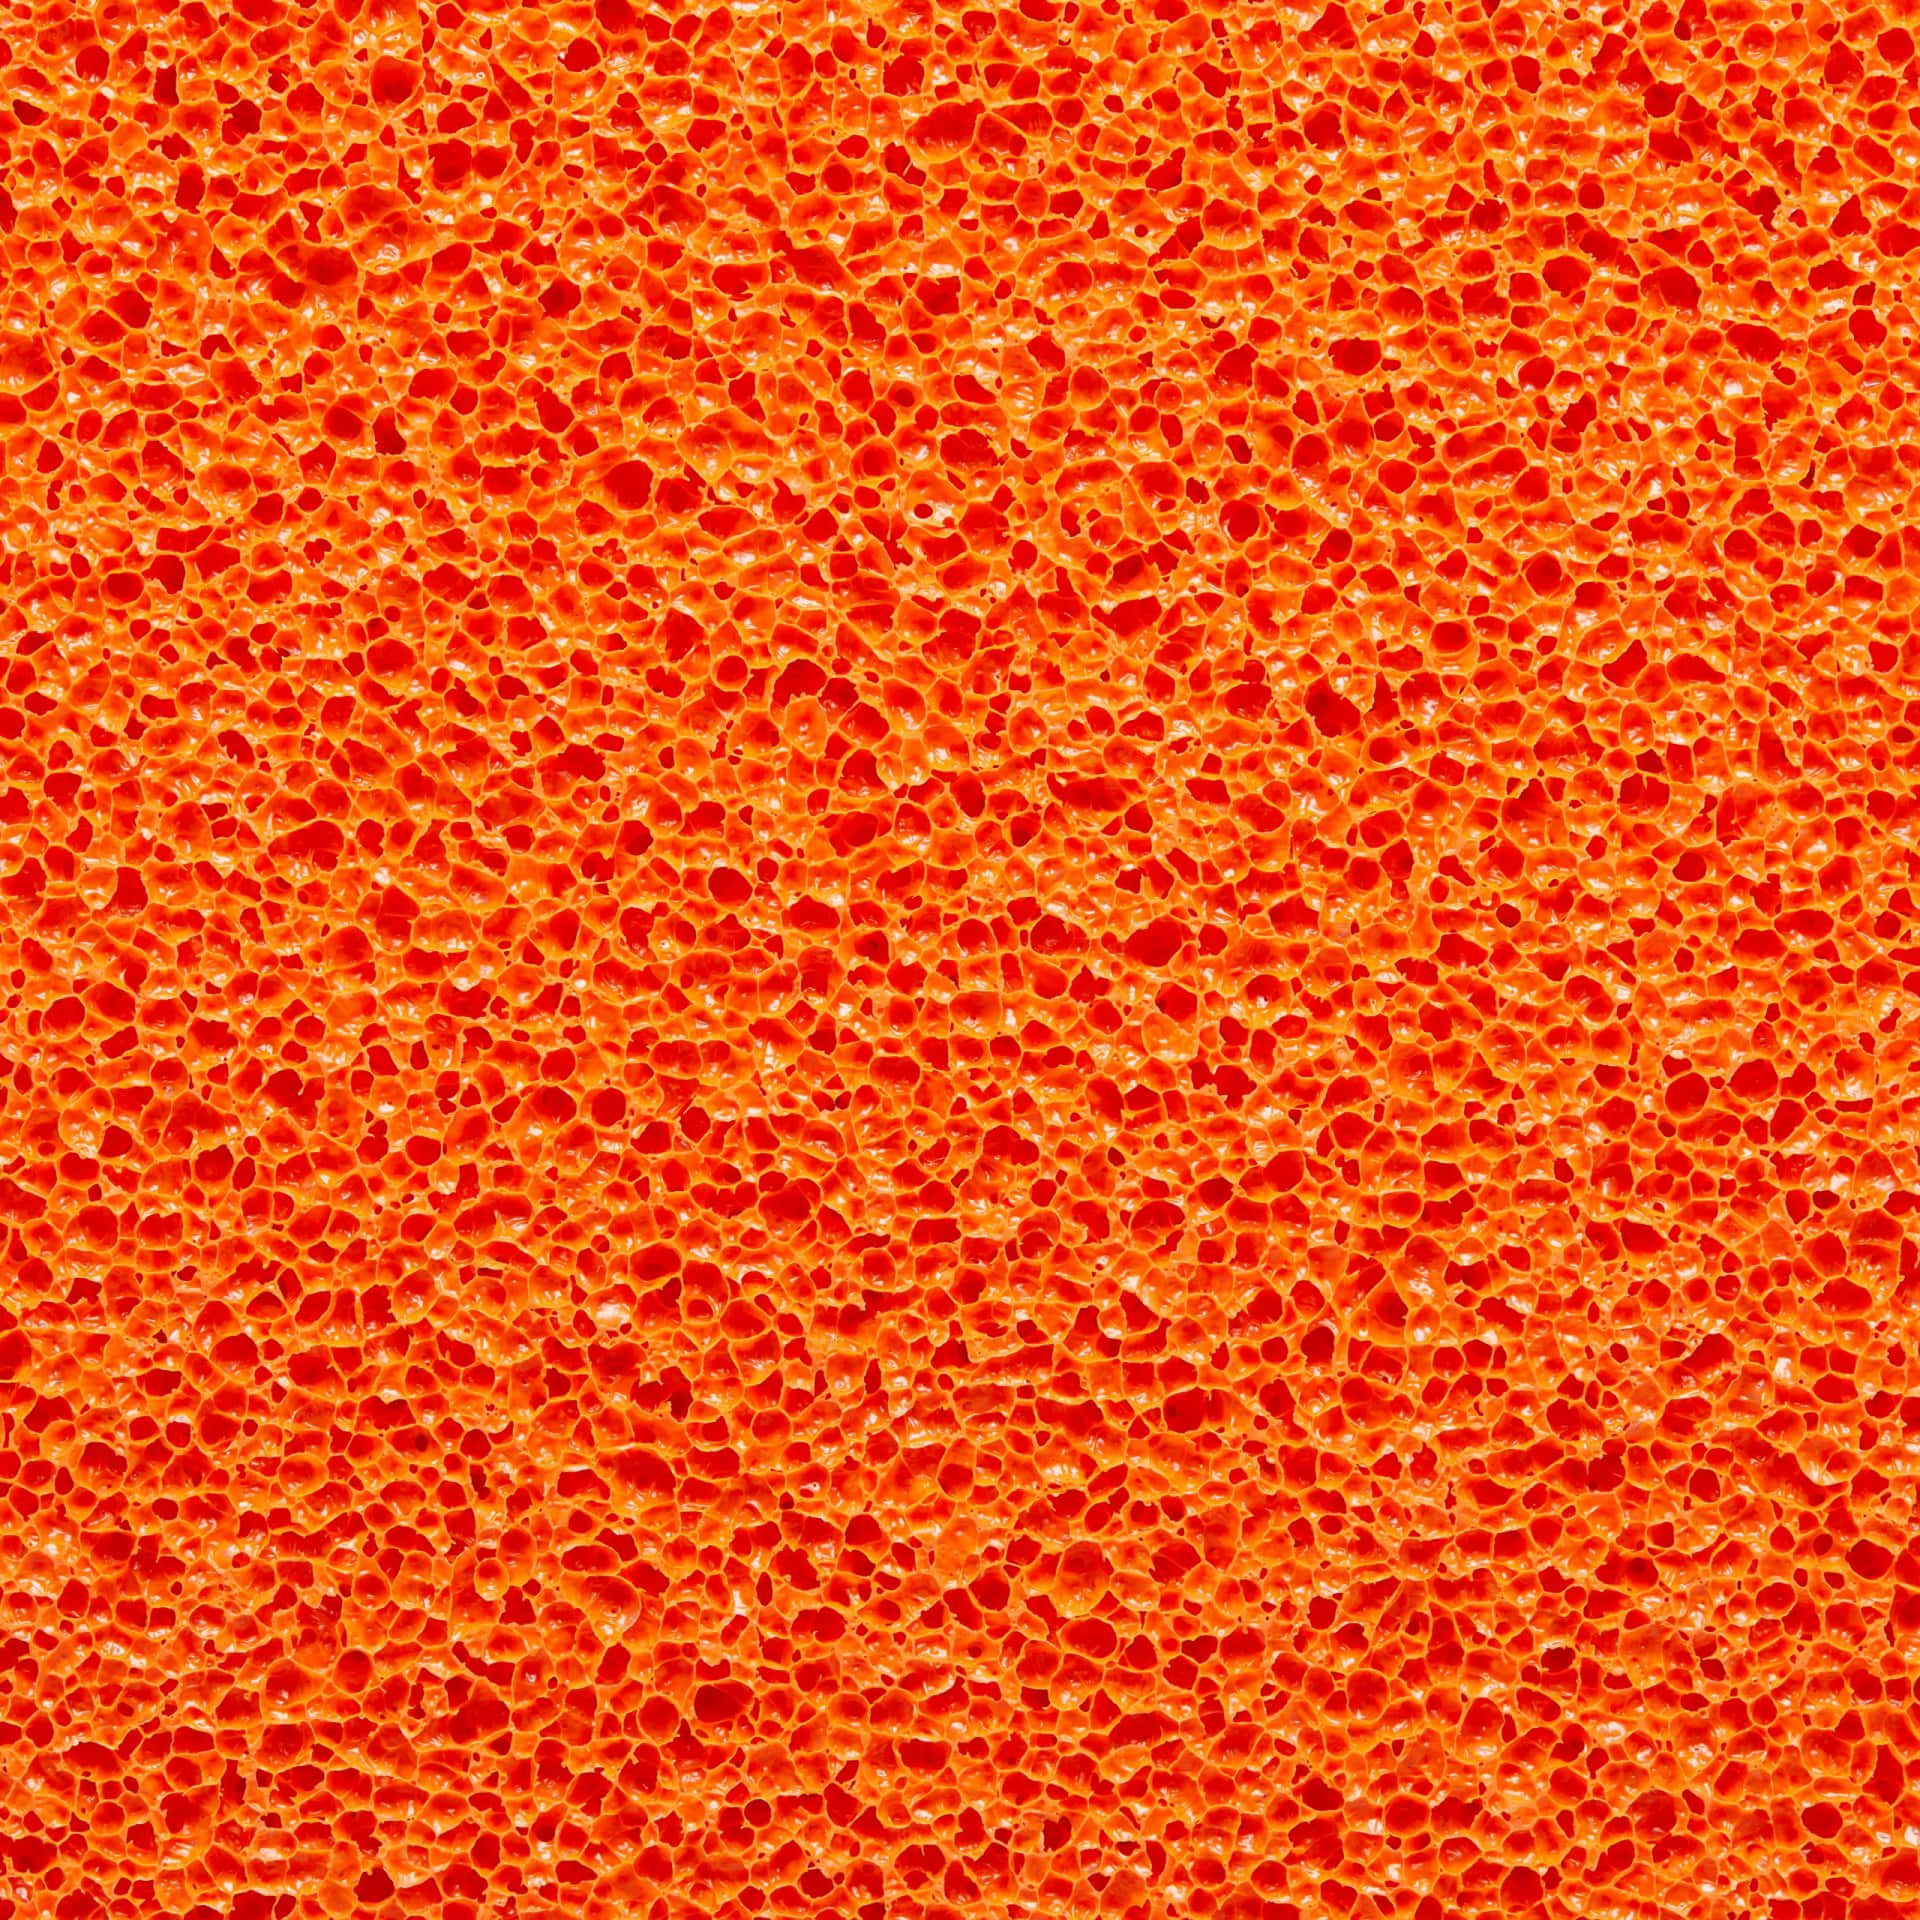 Erhellensie Ihren Tag Mit Diesem Lebendigen Orangefarbenen Hintergrundbild. Wallpaper